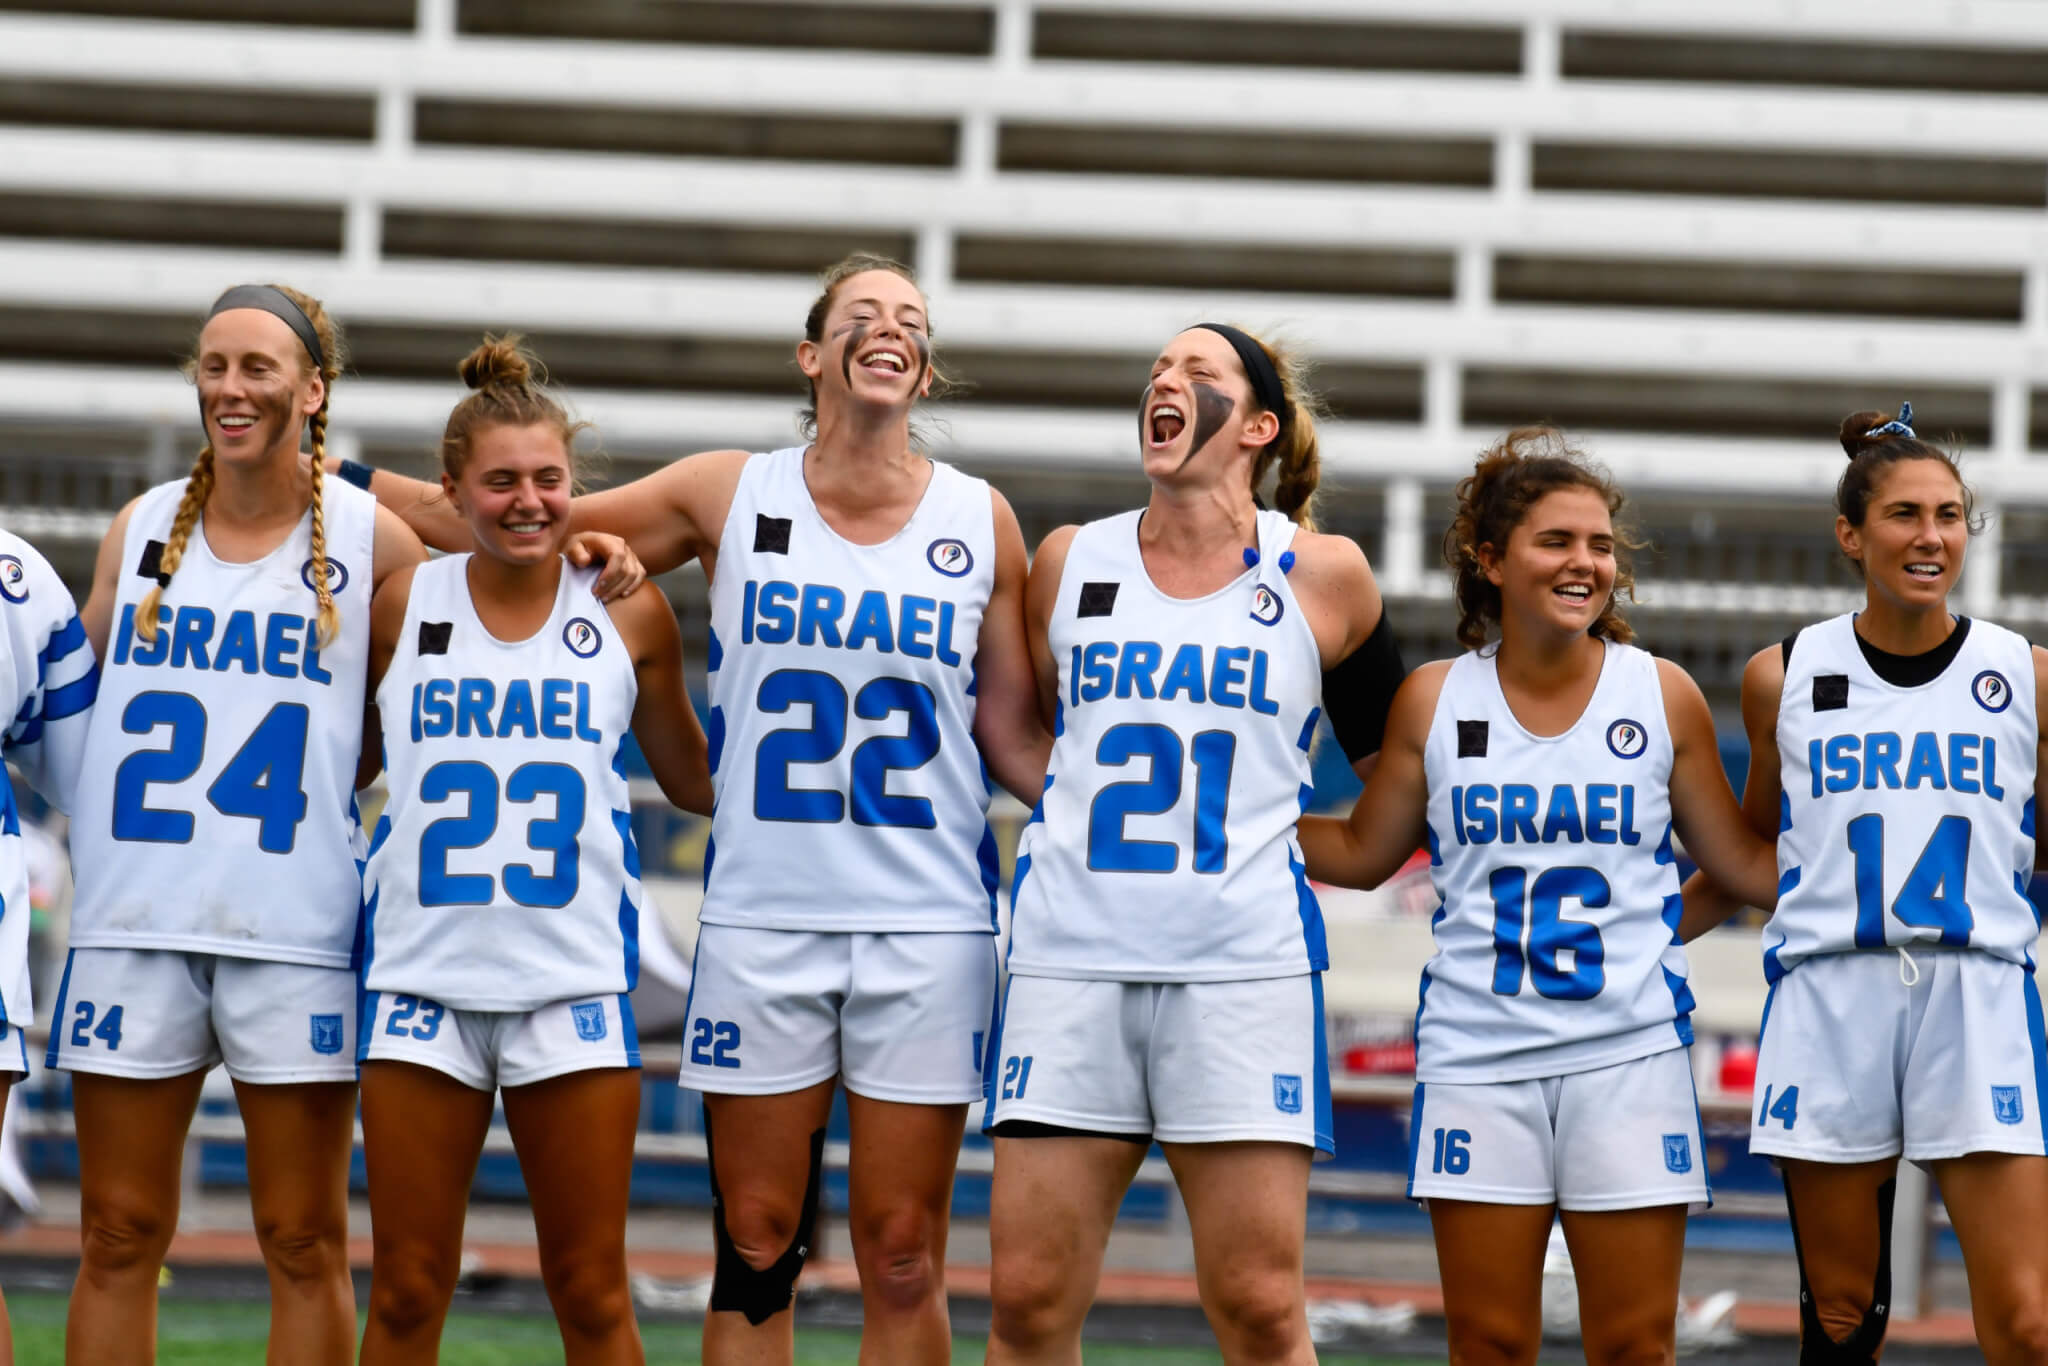 colorado teen joins israel's womens lacrosse team